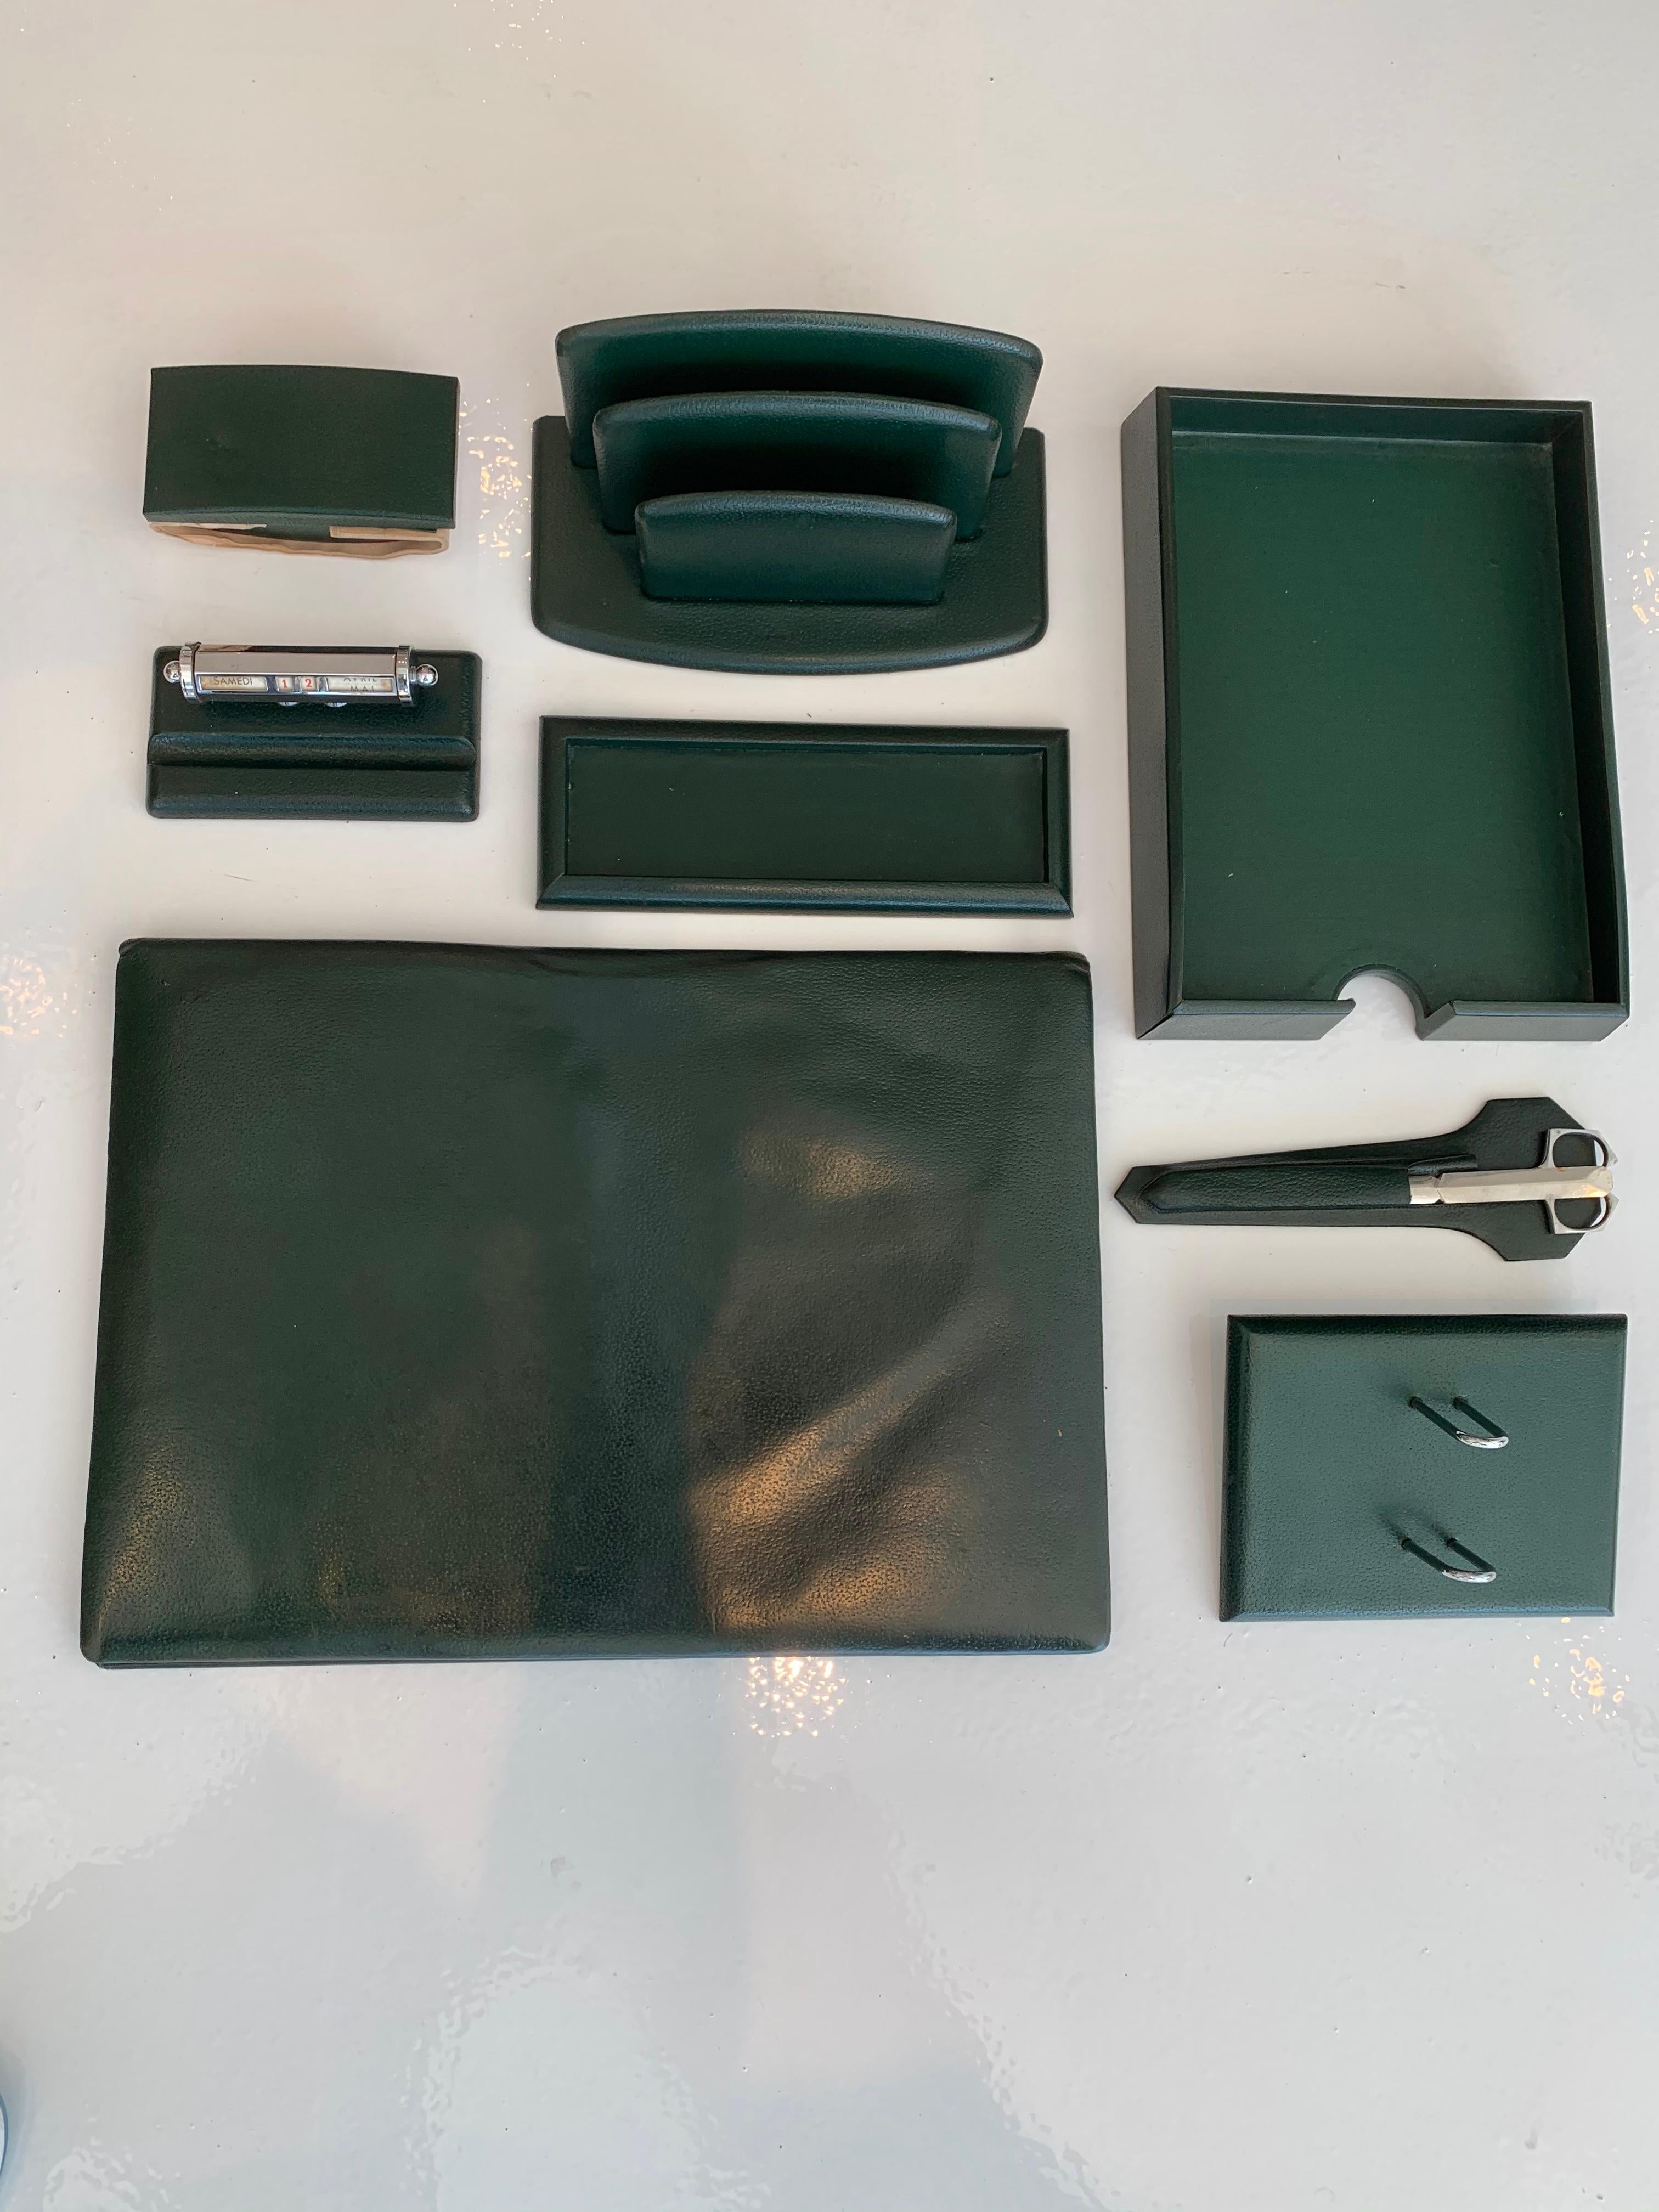 Fantastisches 8-teiliges französisches Leder-Schreibtischset von Le Tanneur. Alle Teile sind in dunkelgrünes Leder eingewickelt. Das Schreibtischset enthält: Schreibtischunterlage, Papierhalter, Stifthalter, Tintenlöscher, Posthalter, verstellbarer